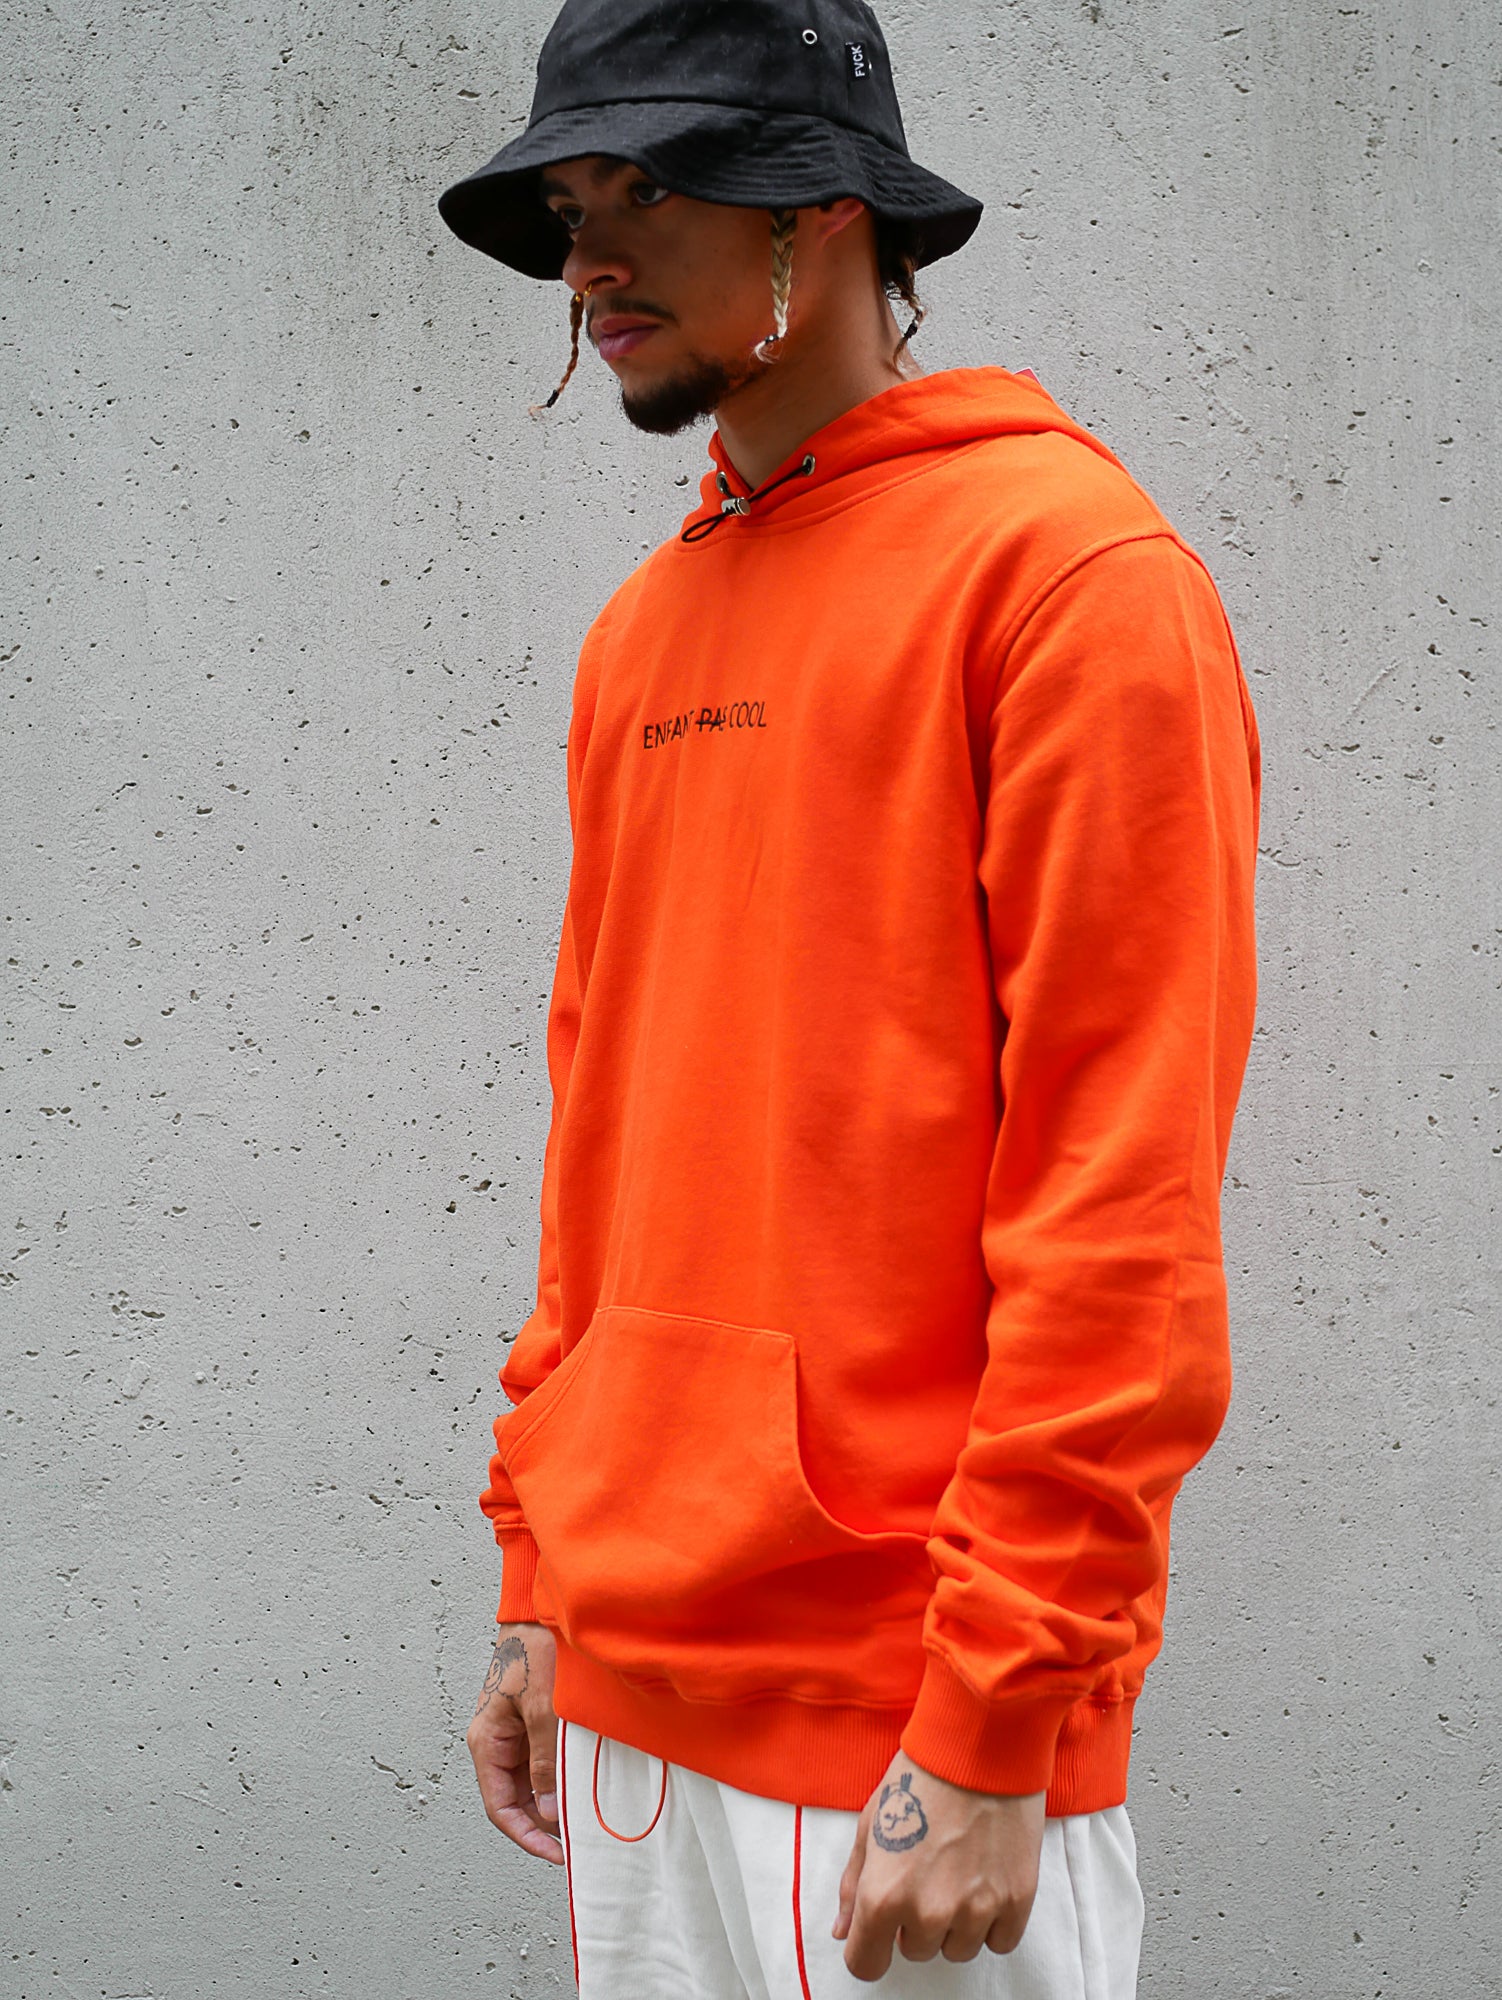 hoodie orange - cool - enfant pas cool - uncool kids - cool kids - forverycoolkids - fvck Paris -hoodie season - citadium - streetwear